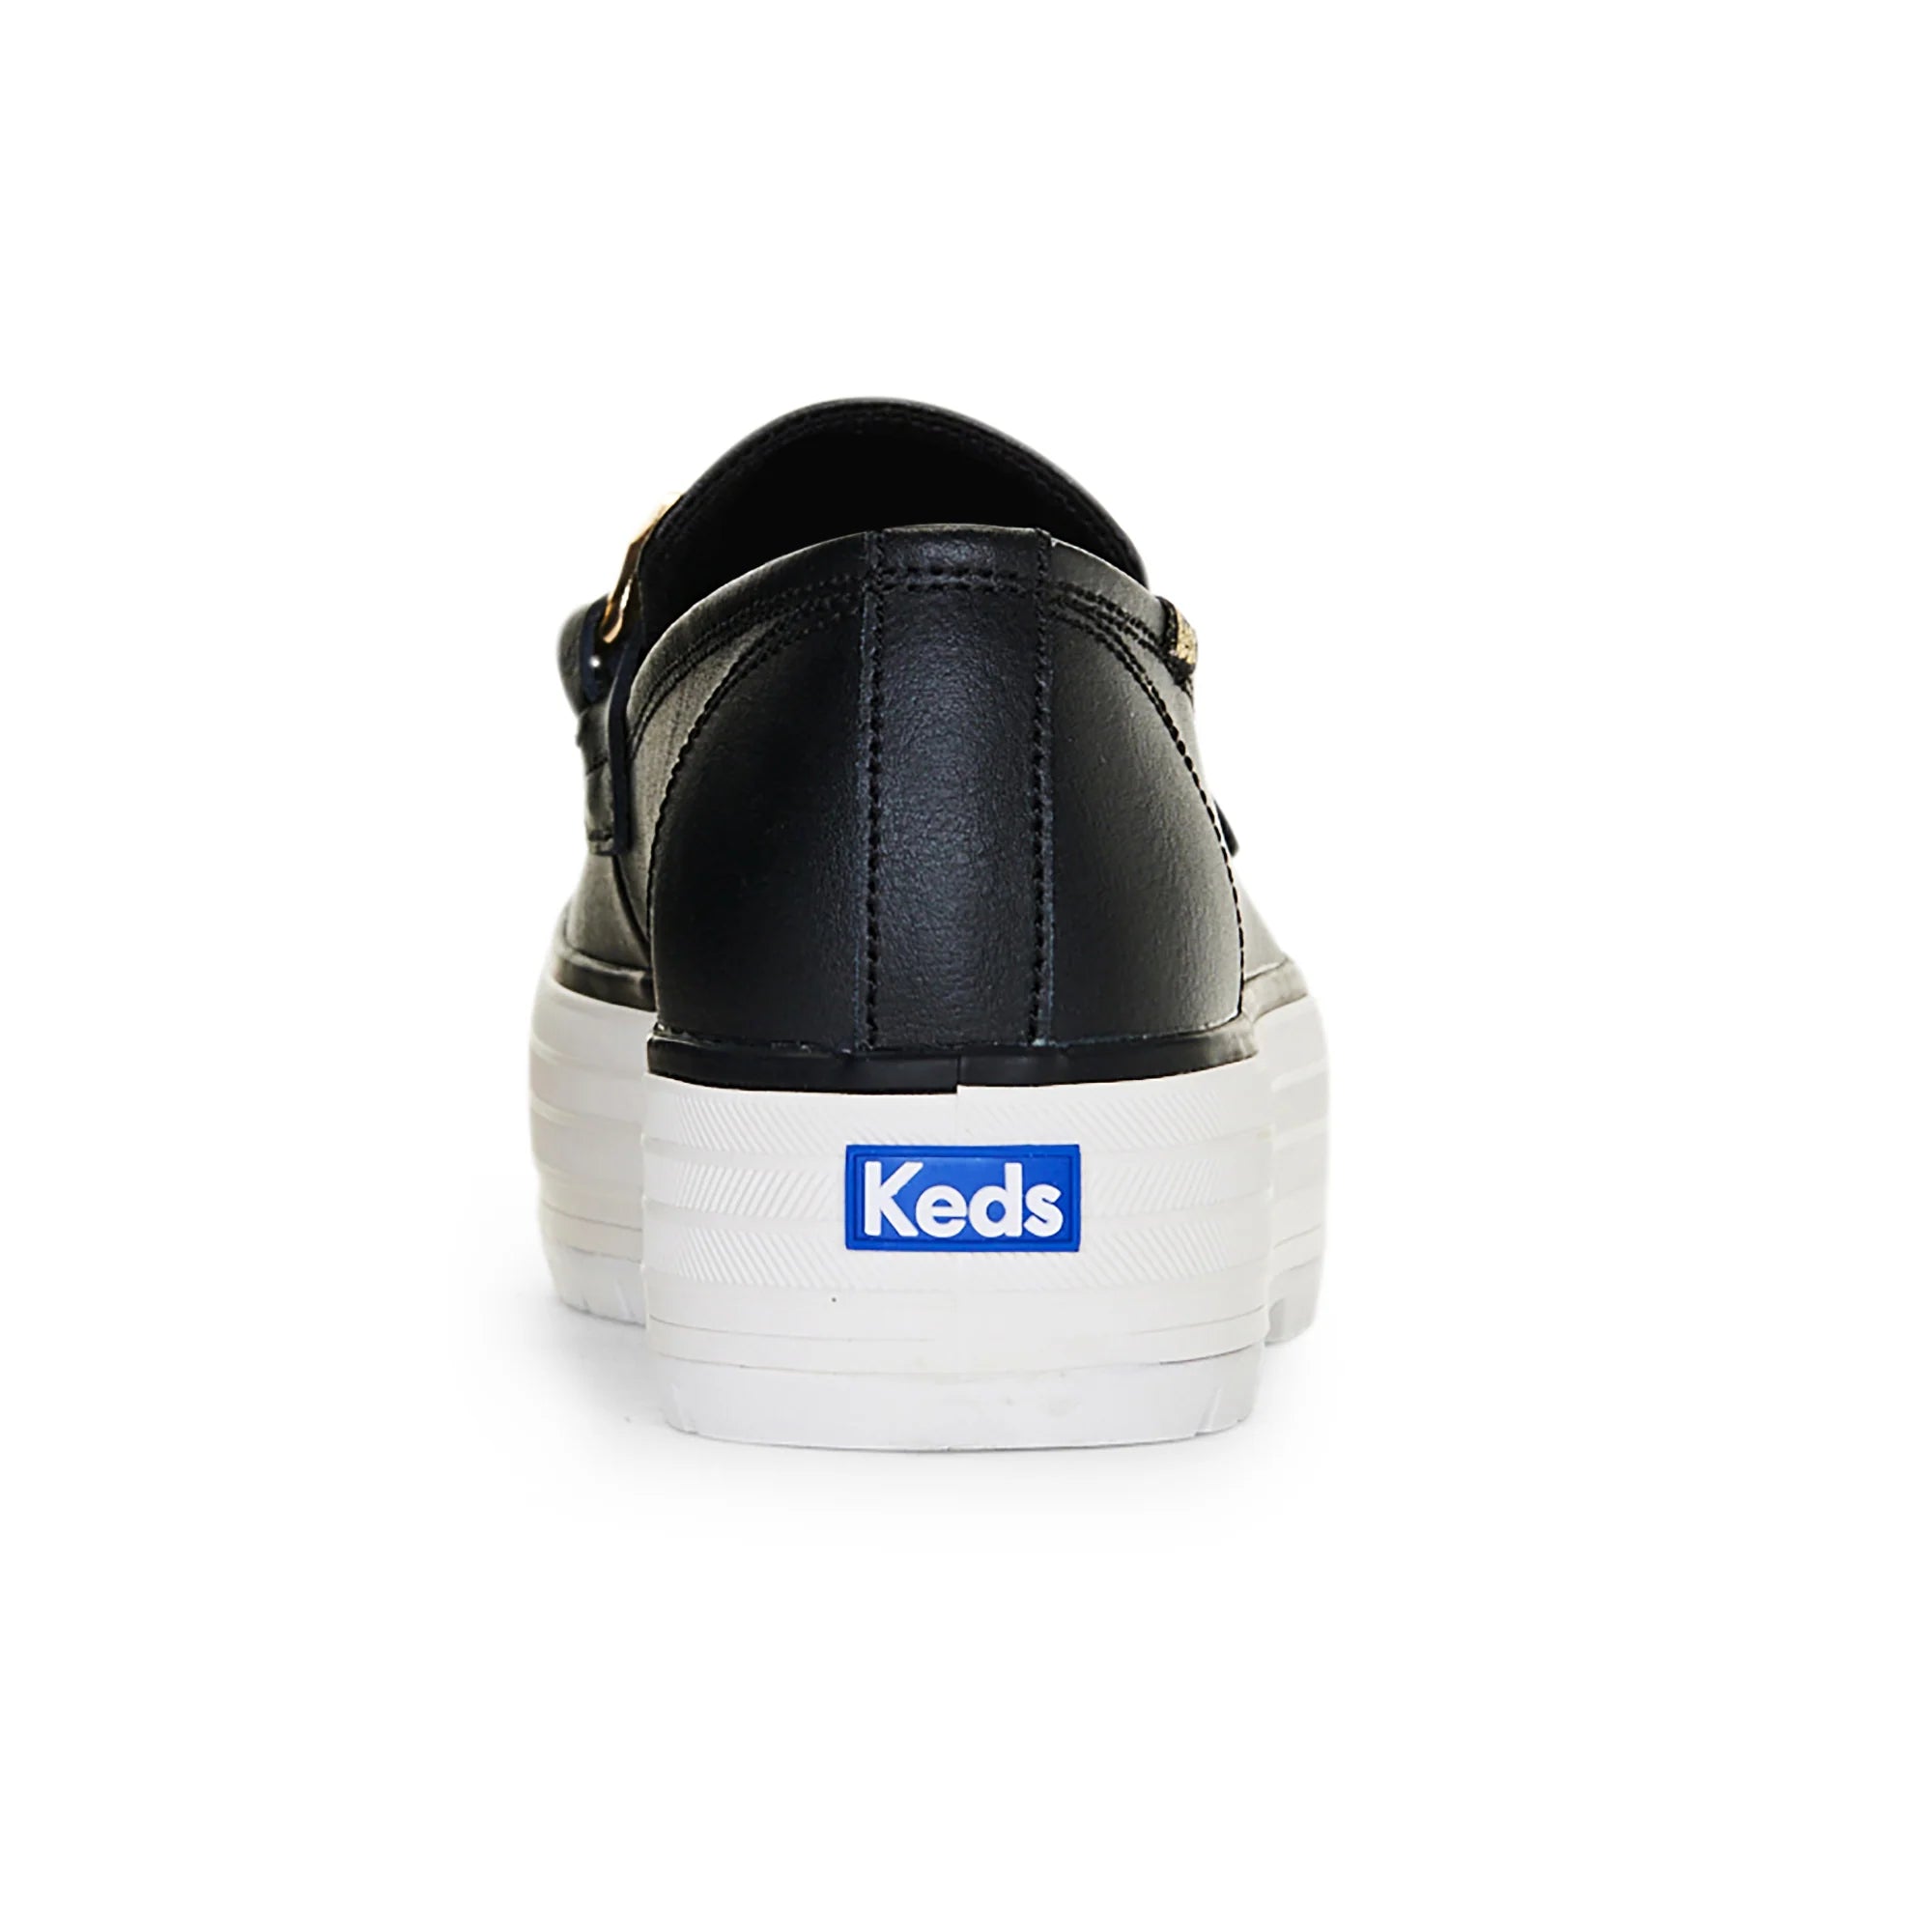 KEDS - Triple Decker Loafer - Leather - Black/Gold